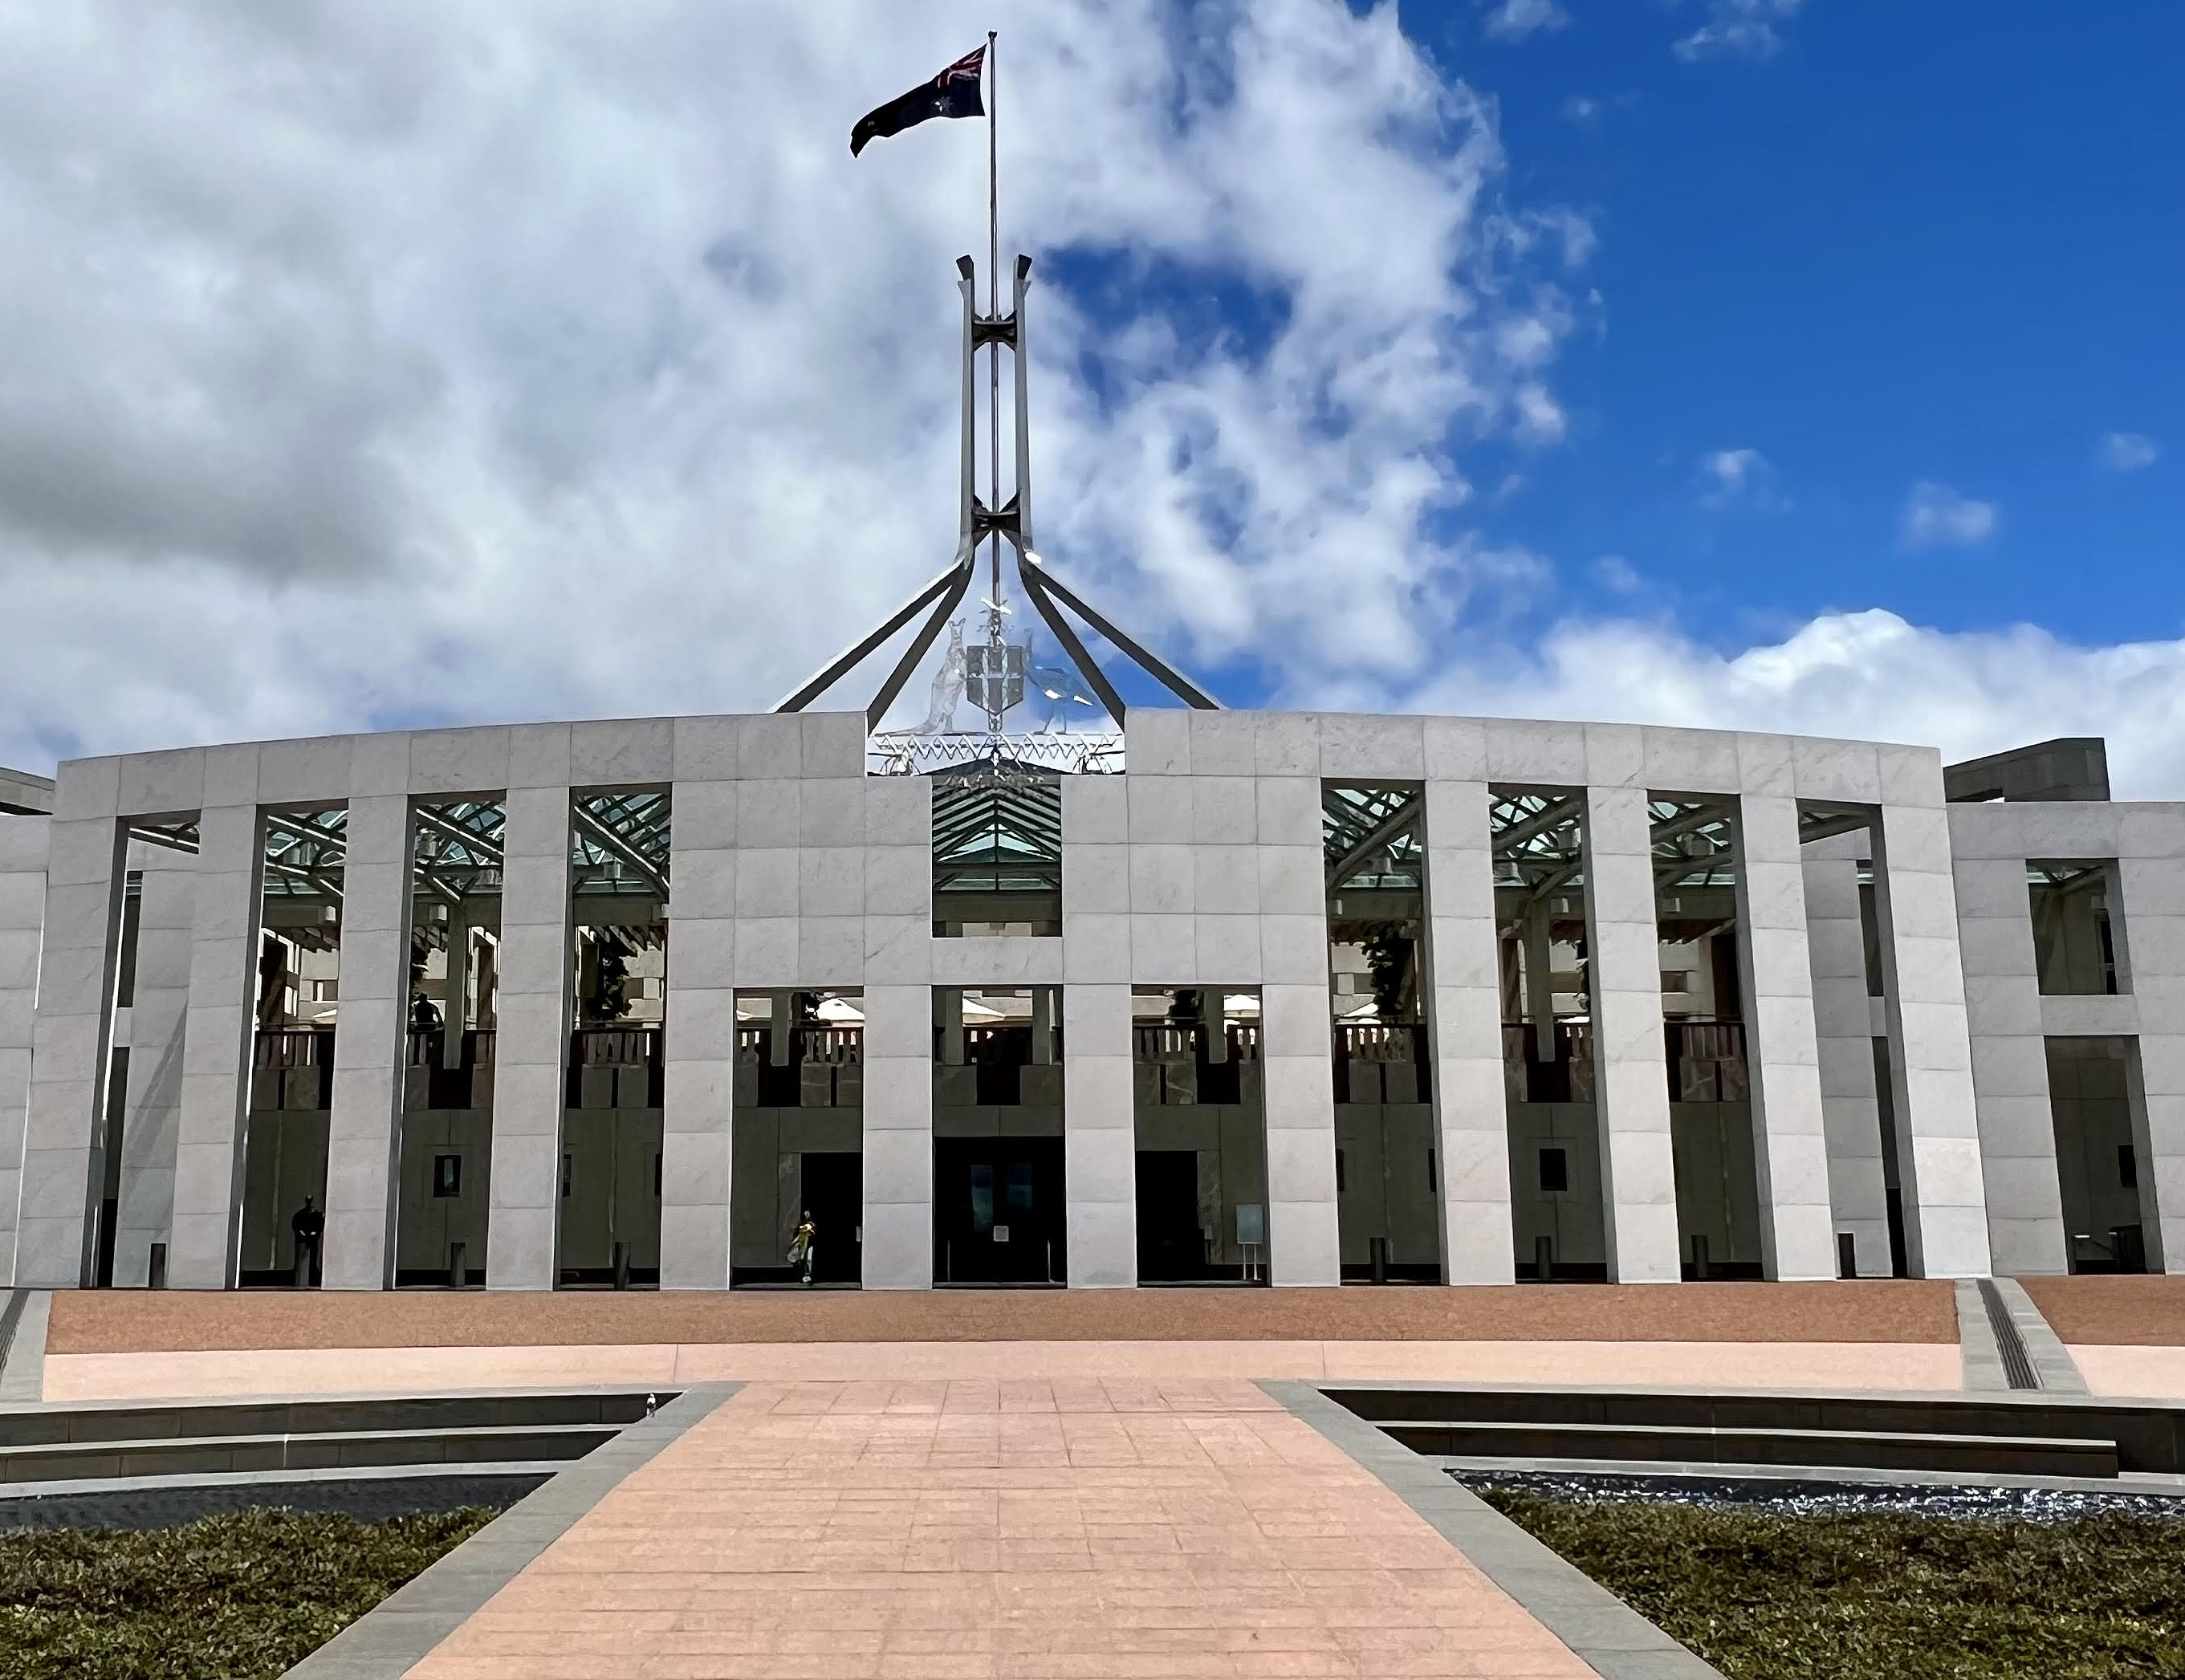 Parlamentsgebäude Canberra, Australien